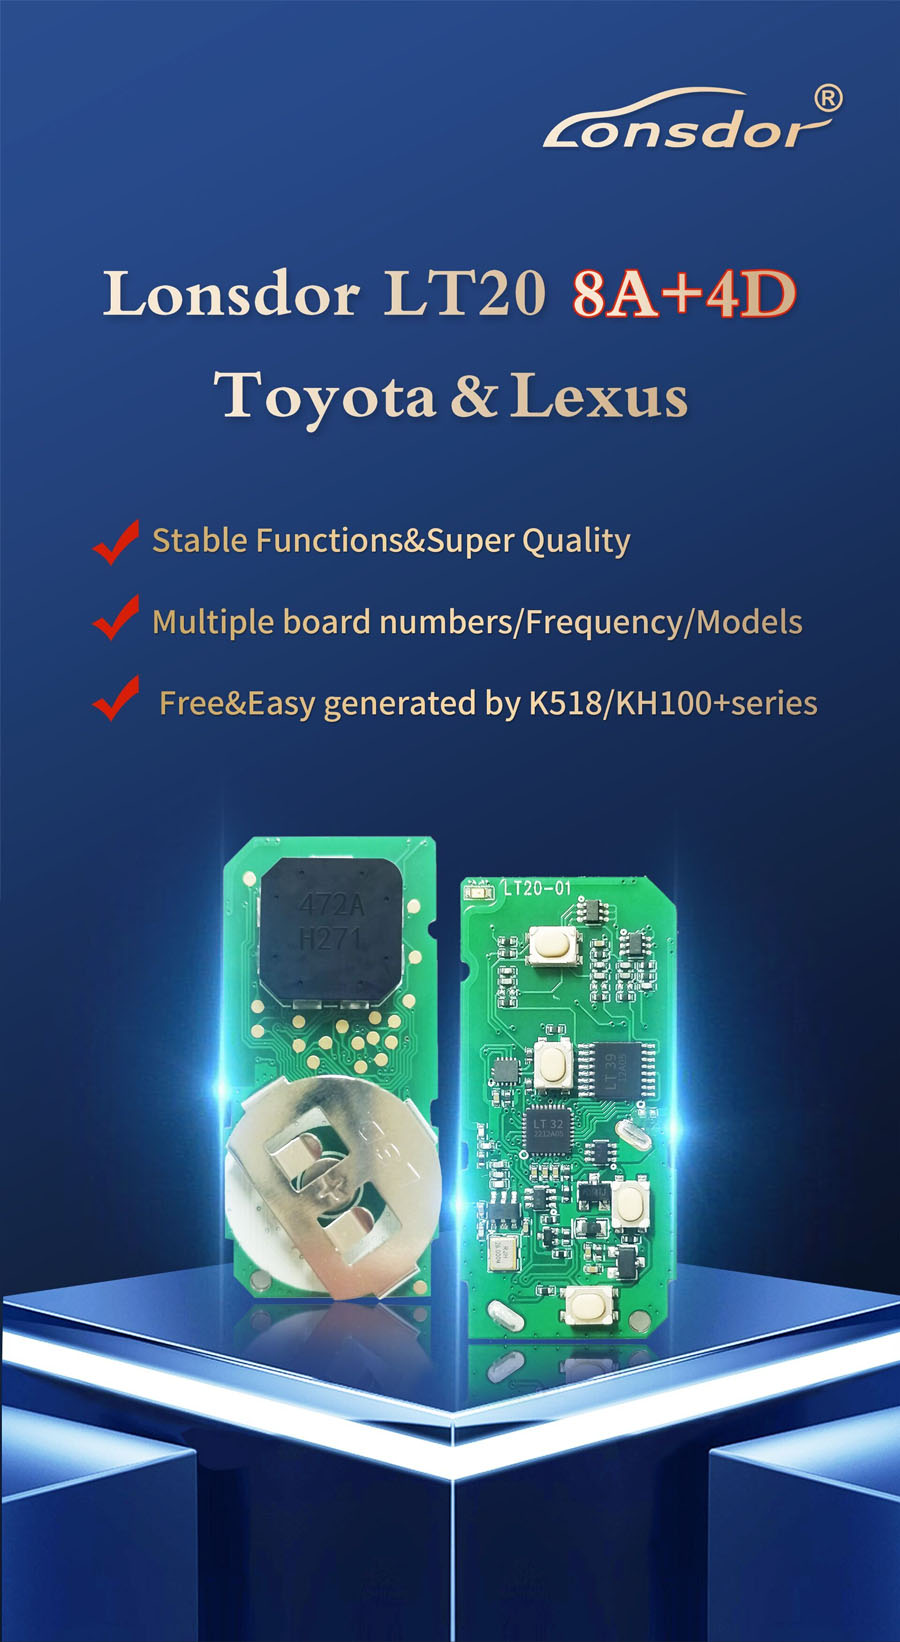 lonsdor-lt20-8a-4d-smart-key-pcb-for-toyota-lexus-1